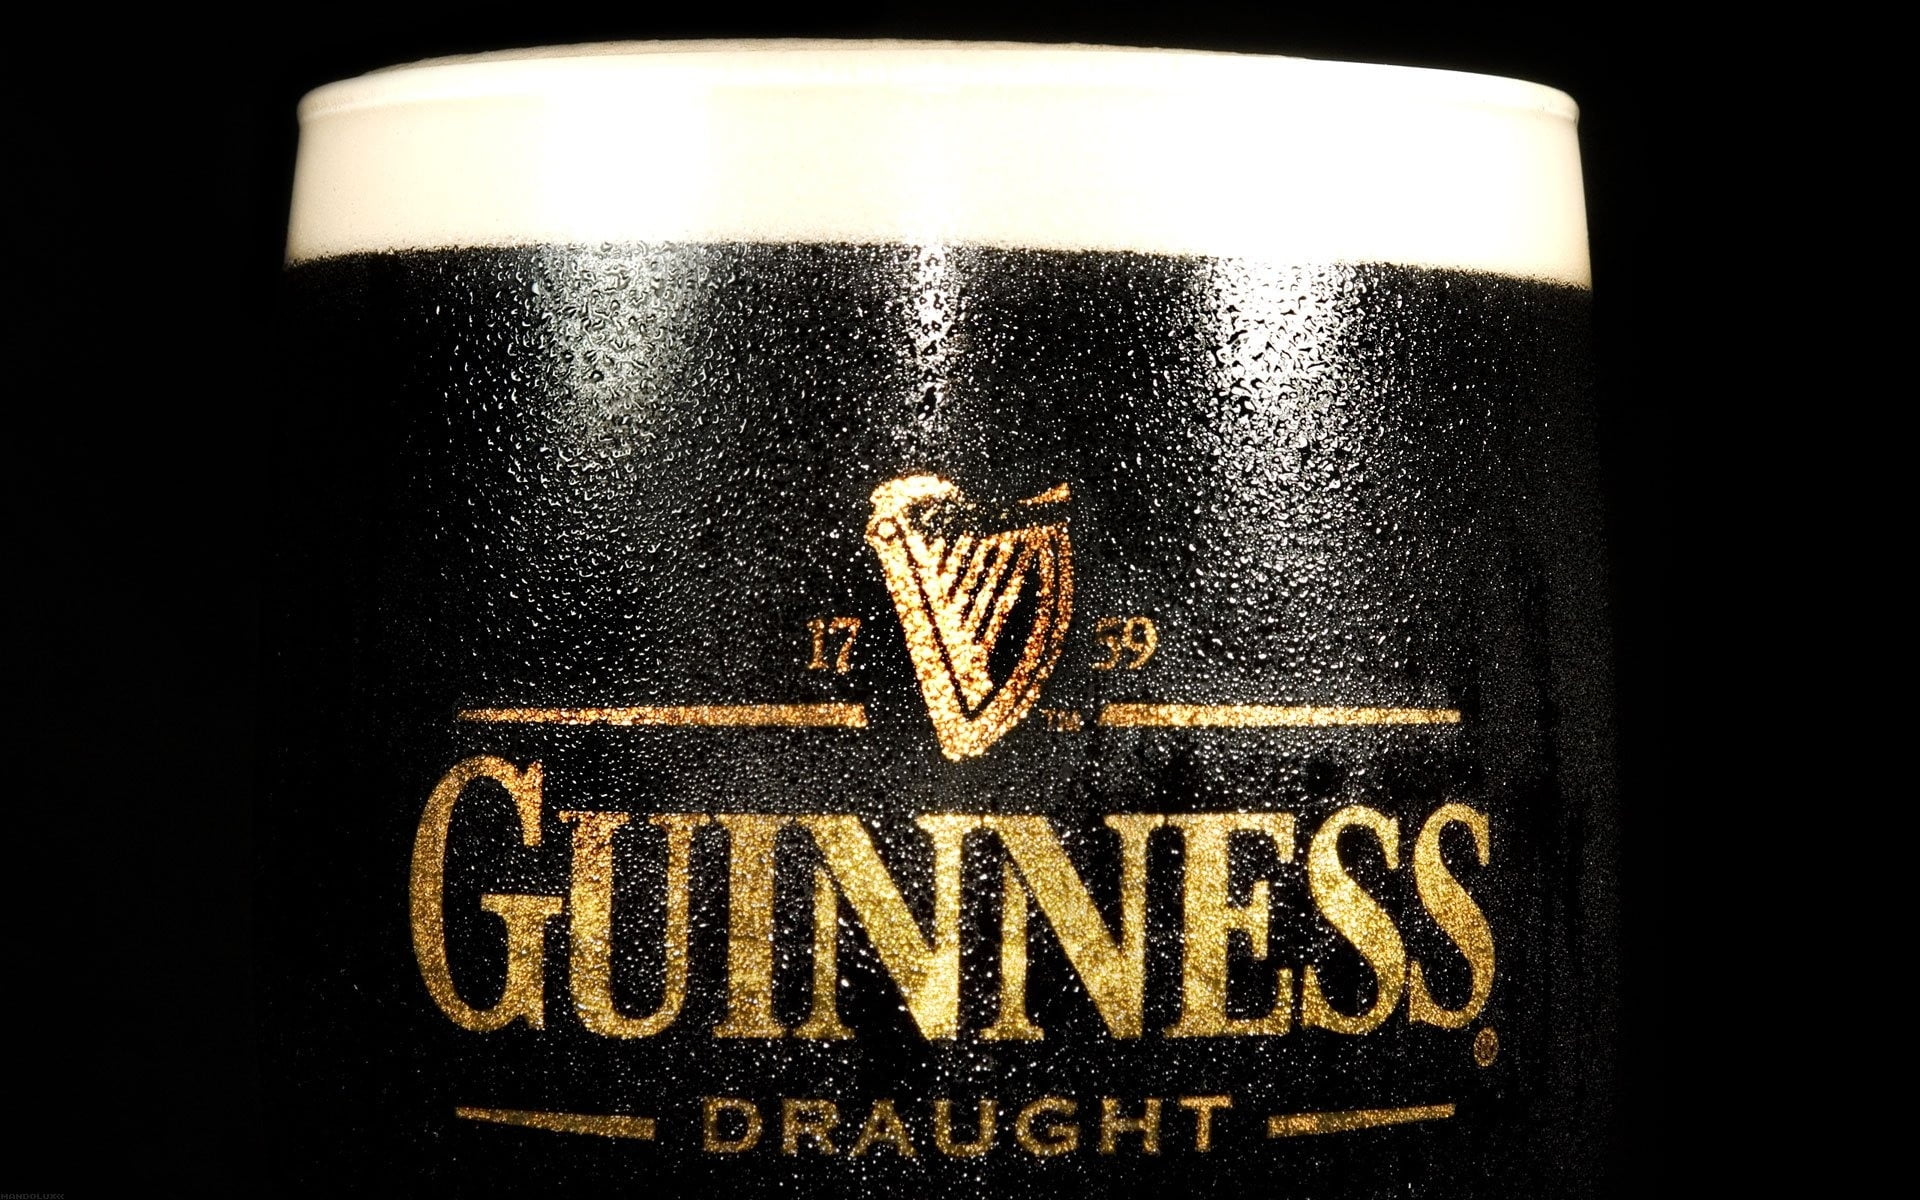 Guinness bottle